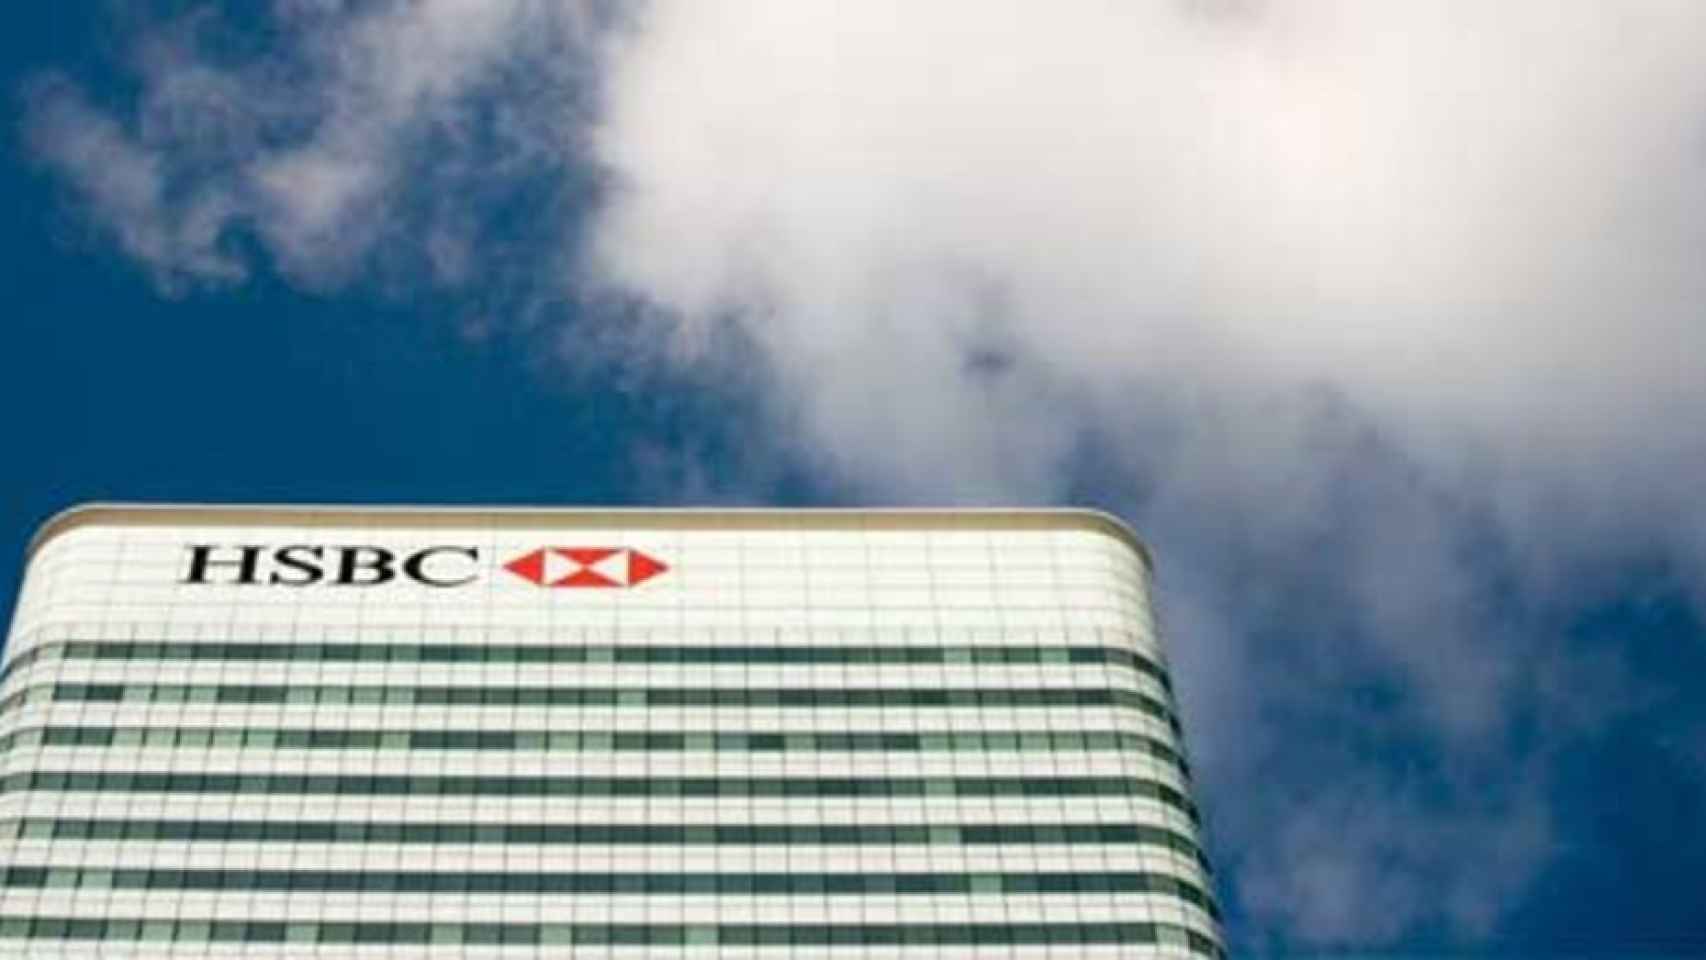 Imagen de archivo de una sede de HSBC.